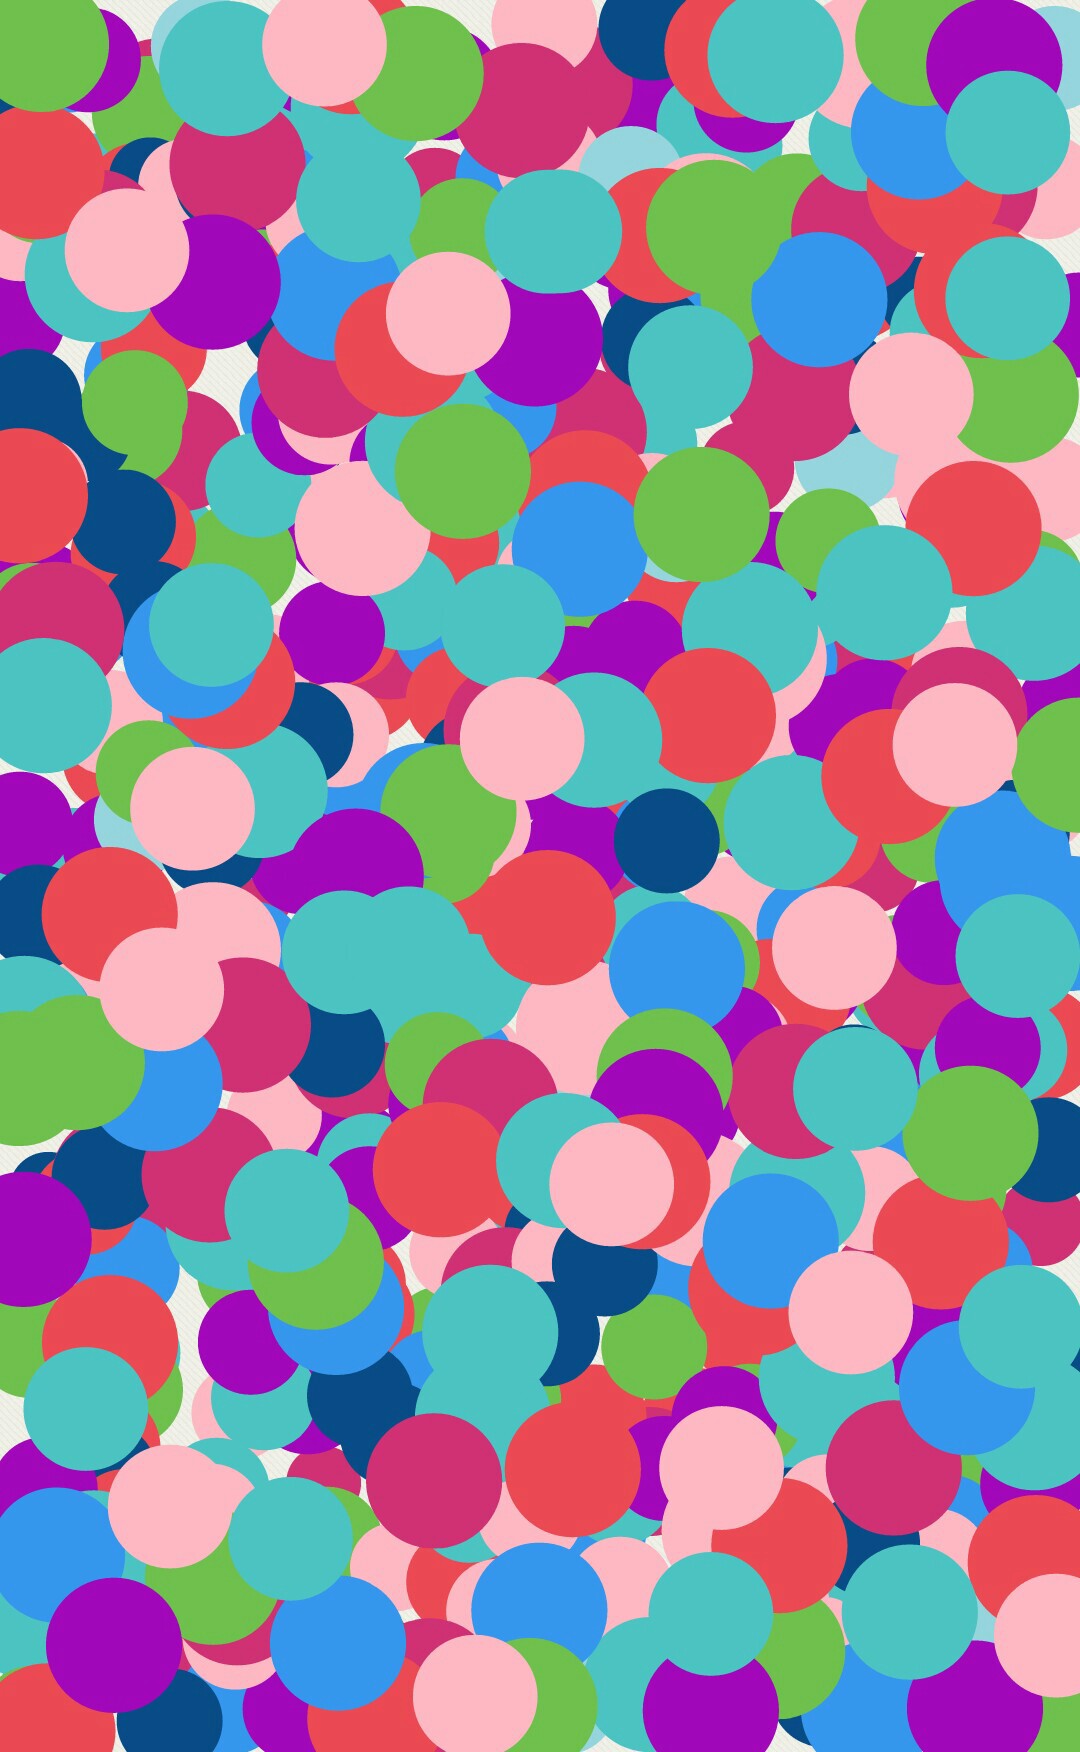 spots+spots= polka dots!:D